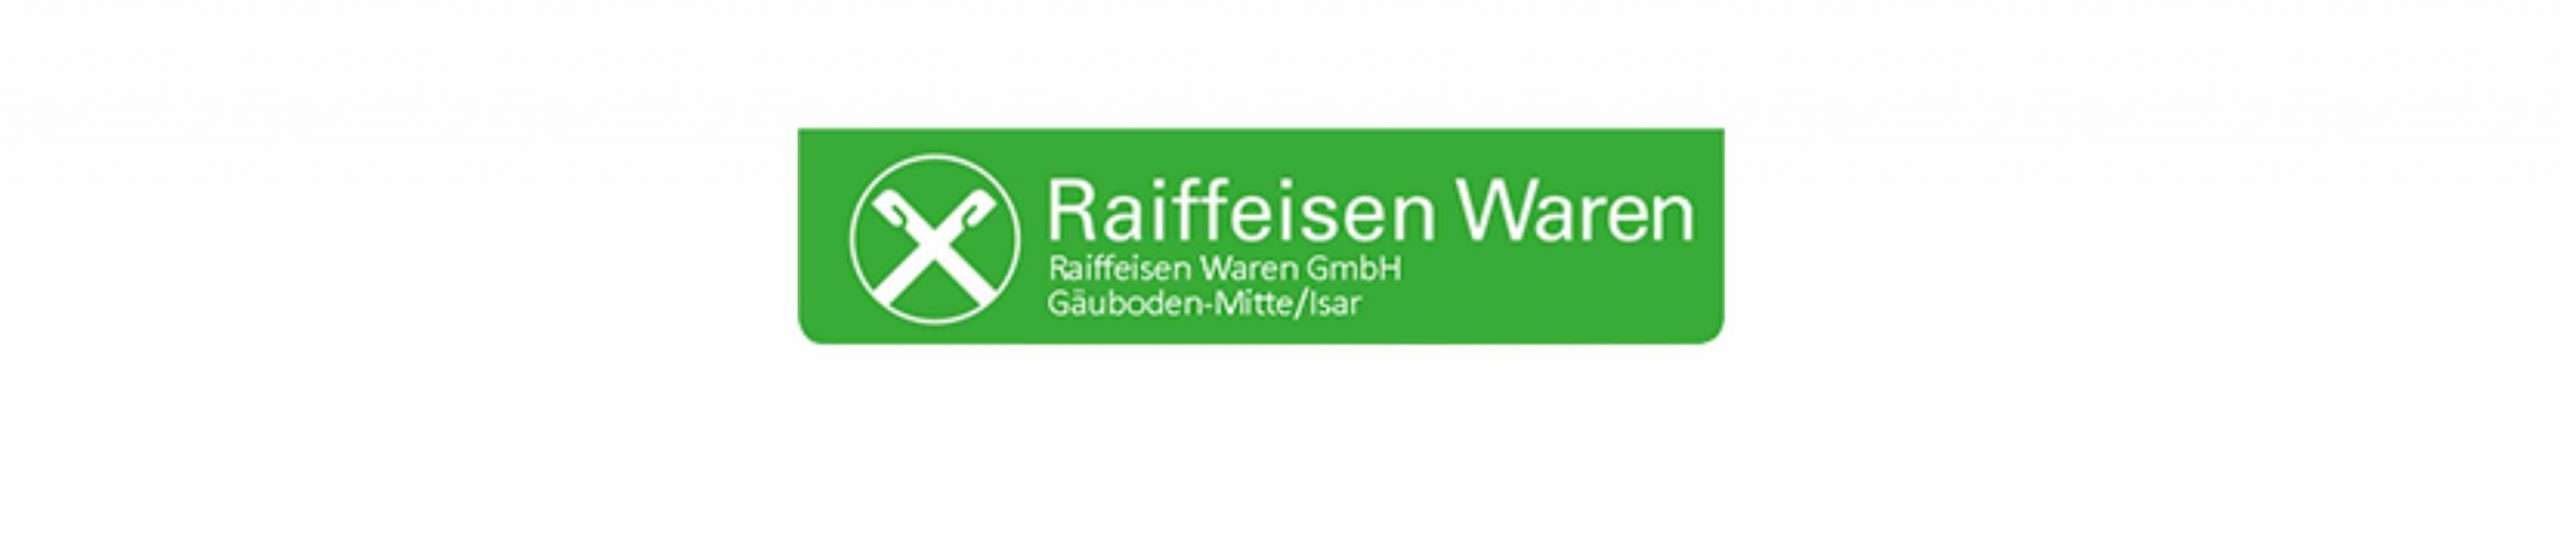 Raiffeisen Waren GmbH Gäuboden-Mitte/Isar - Mamming